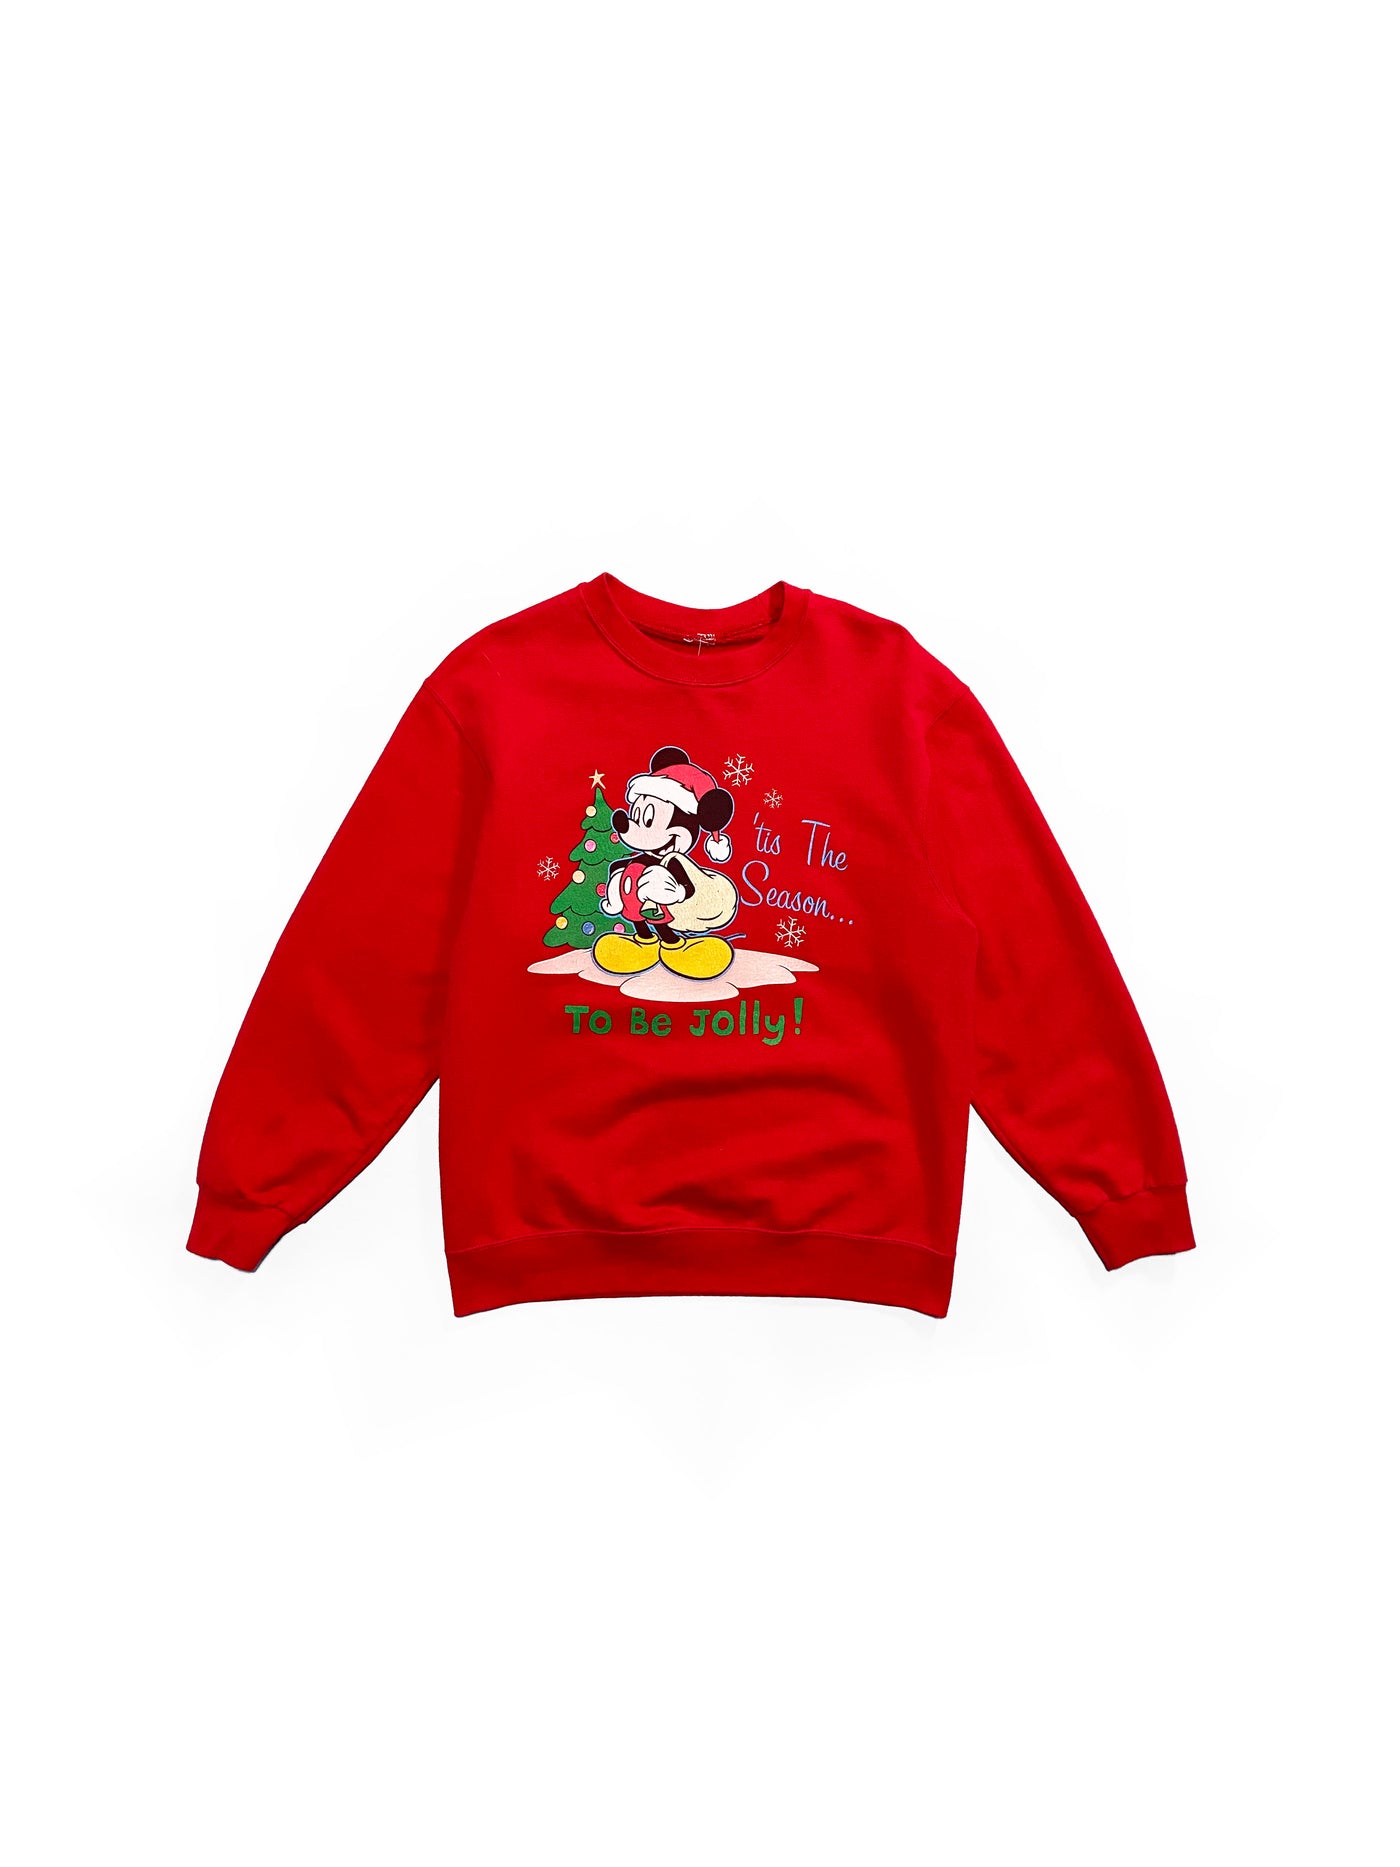 Vintage 90s Mickey Mouse Christmas Crewneck